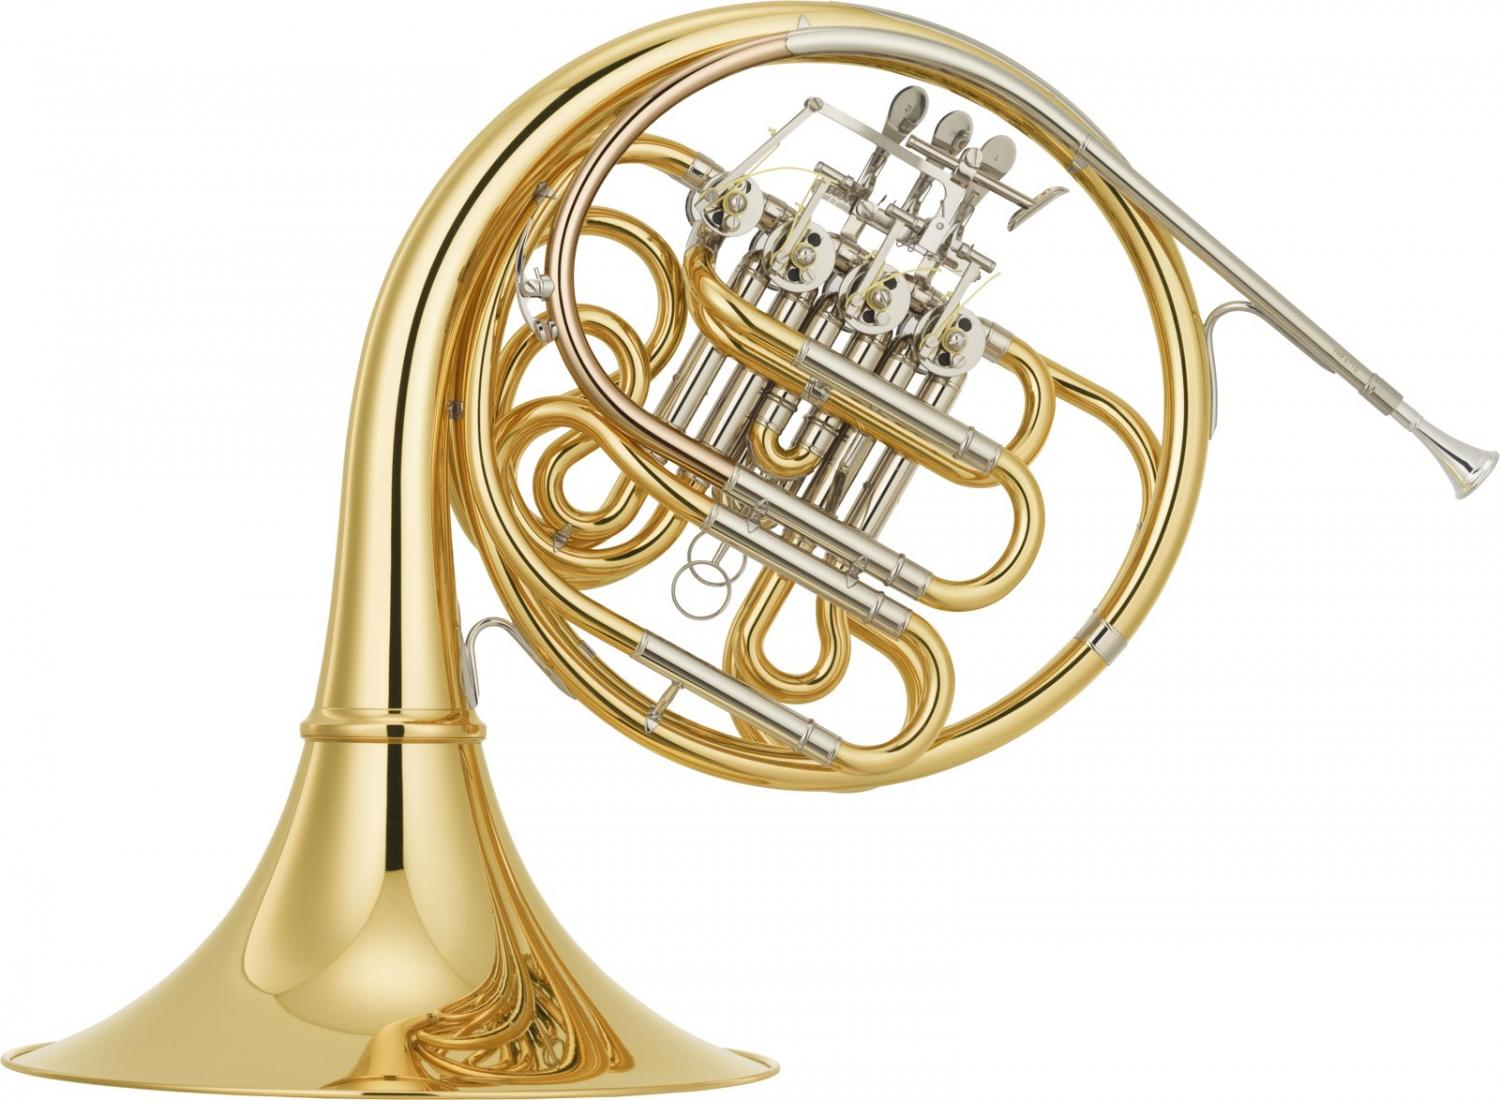 ブランド激安セール会場 YAMAHA YHR-671D フレンチホルン デタッチャブル ガイヤースタイル フルダブルホルン 楽器 ホルン Full  double French horn SB3X セット 北海道 沖縄 離島不可